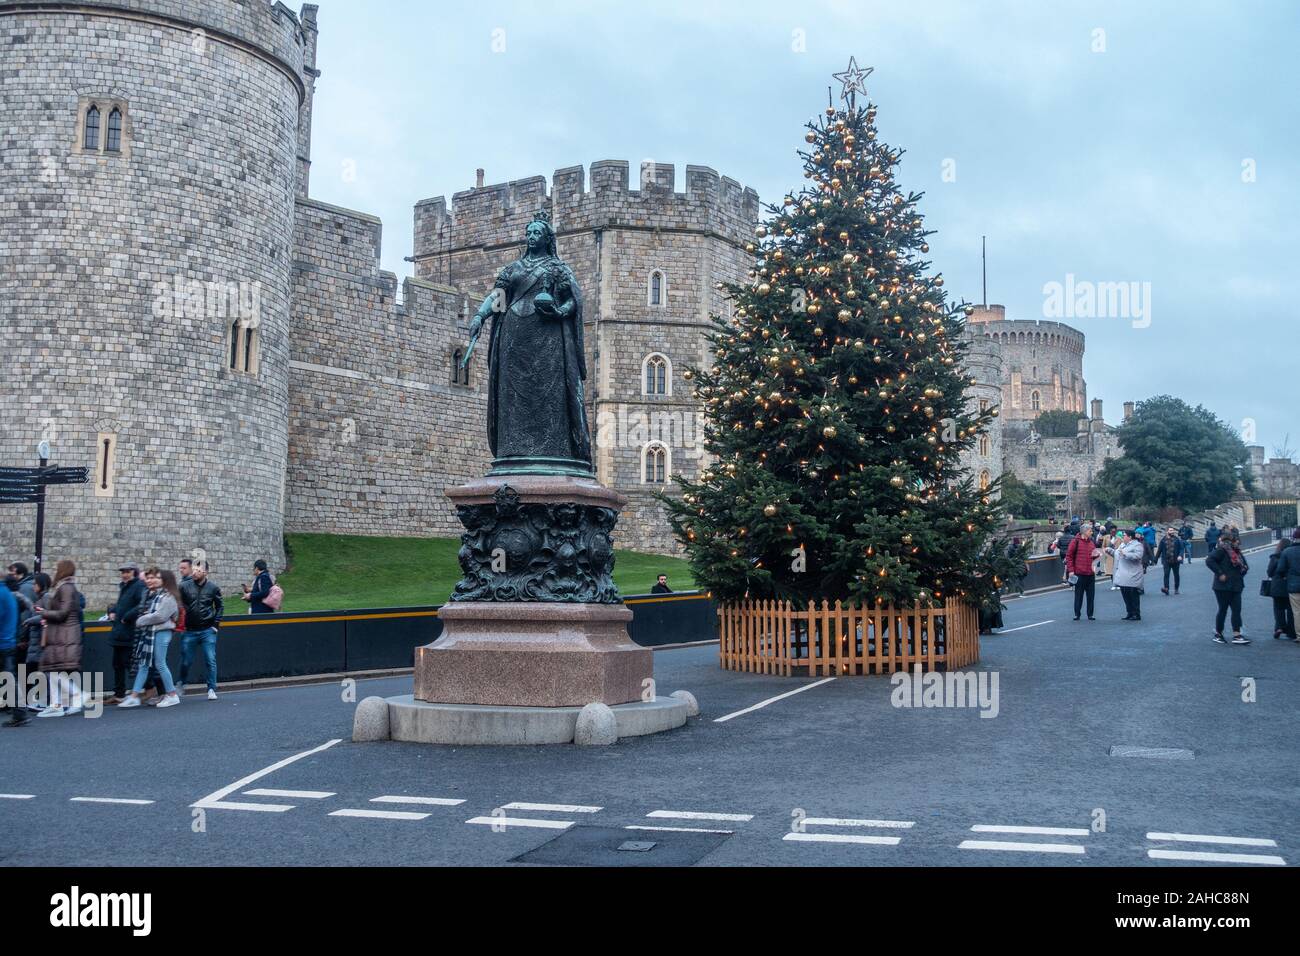 Statua di bronzo di Queen Victoria sorge al di fuori del Castello di Windsor in Inghilterra con un albero di Natale dietro, Foto Stock